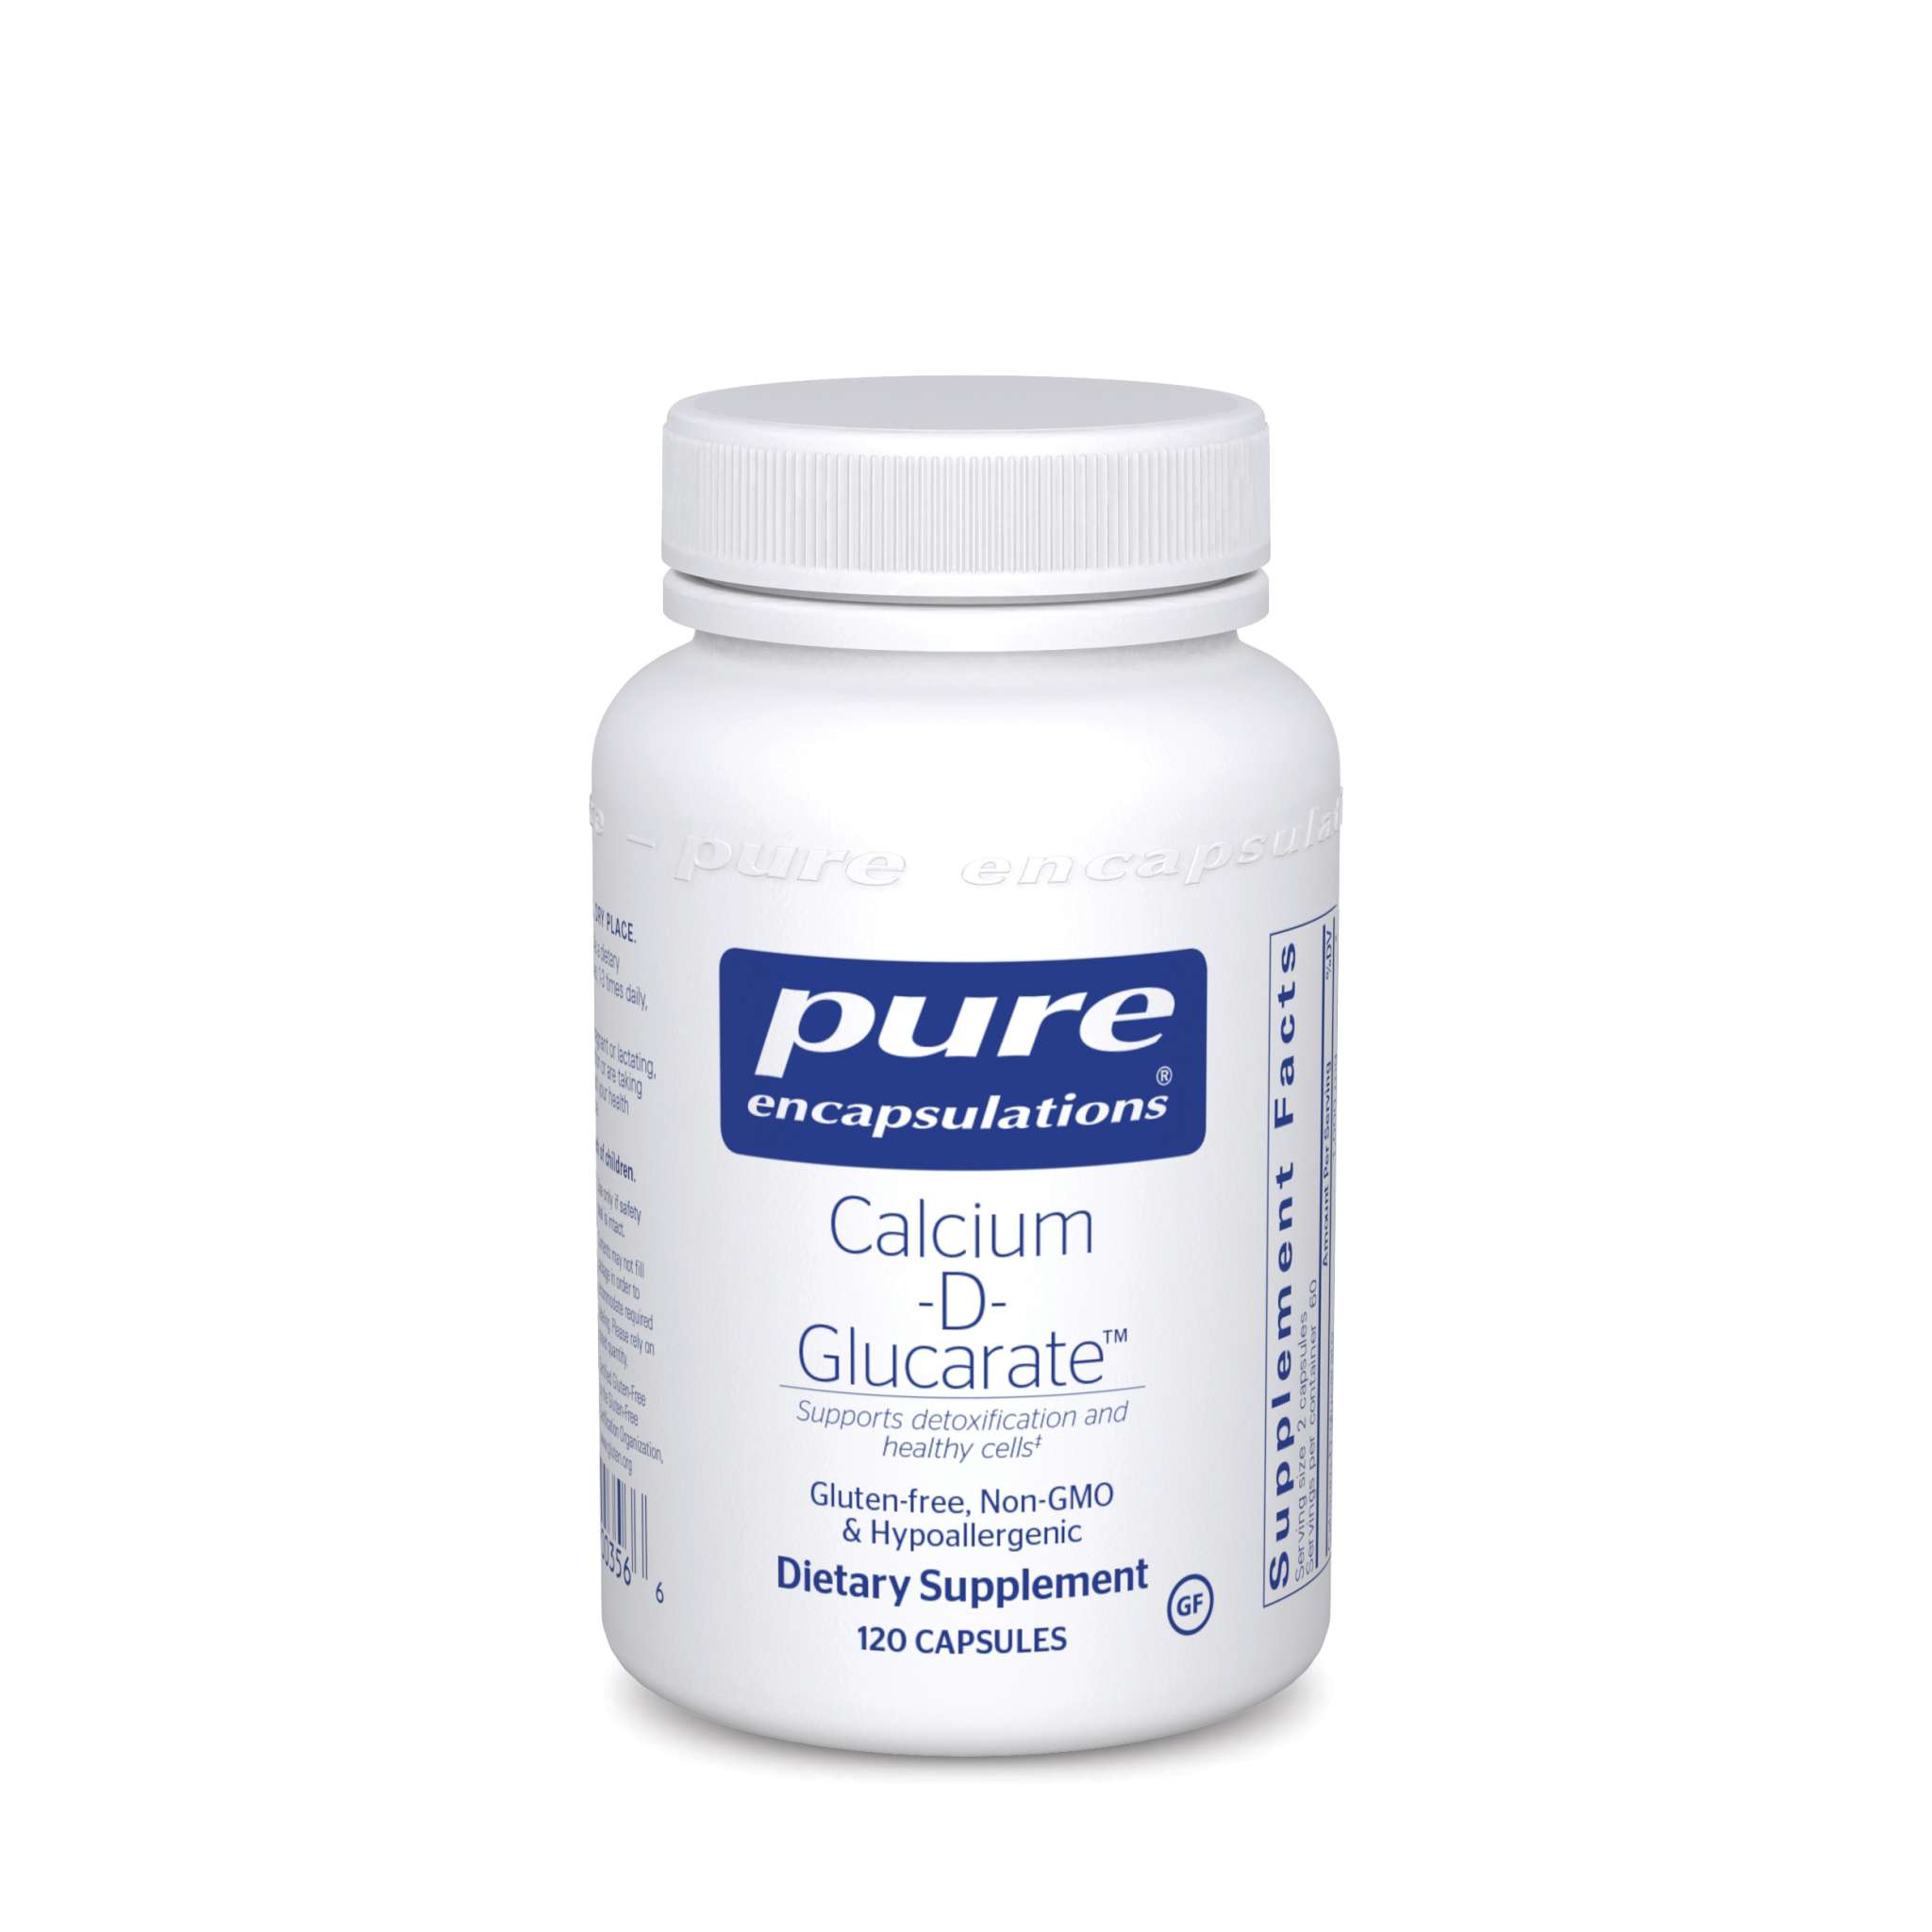 Pure Encapsulations - Calcium D Glucarate 500 mg